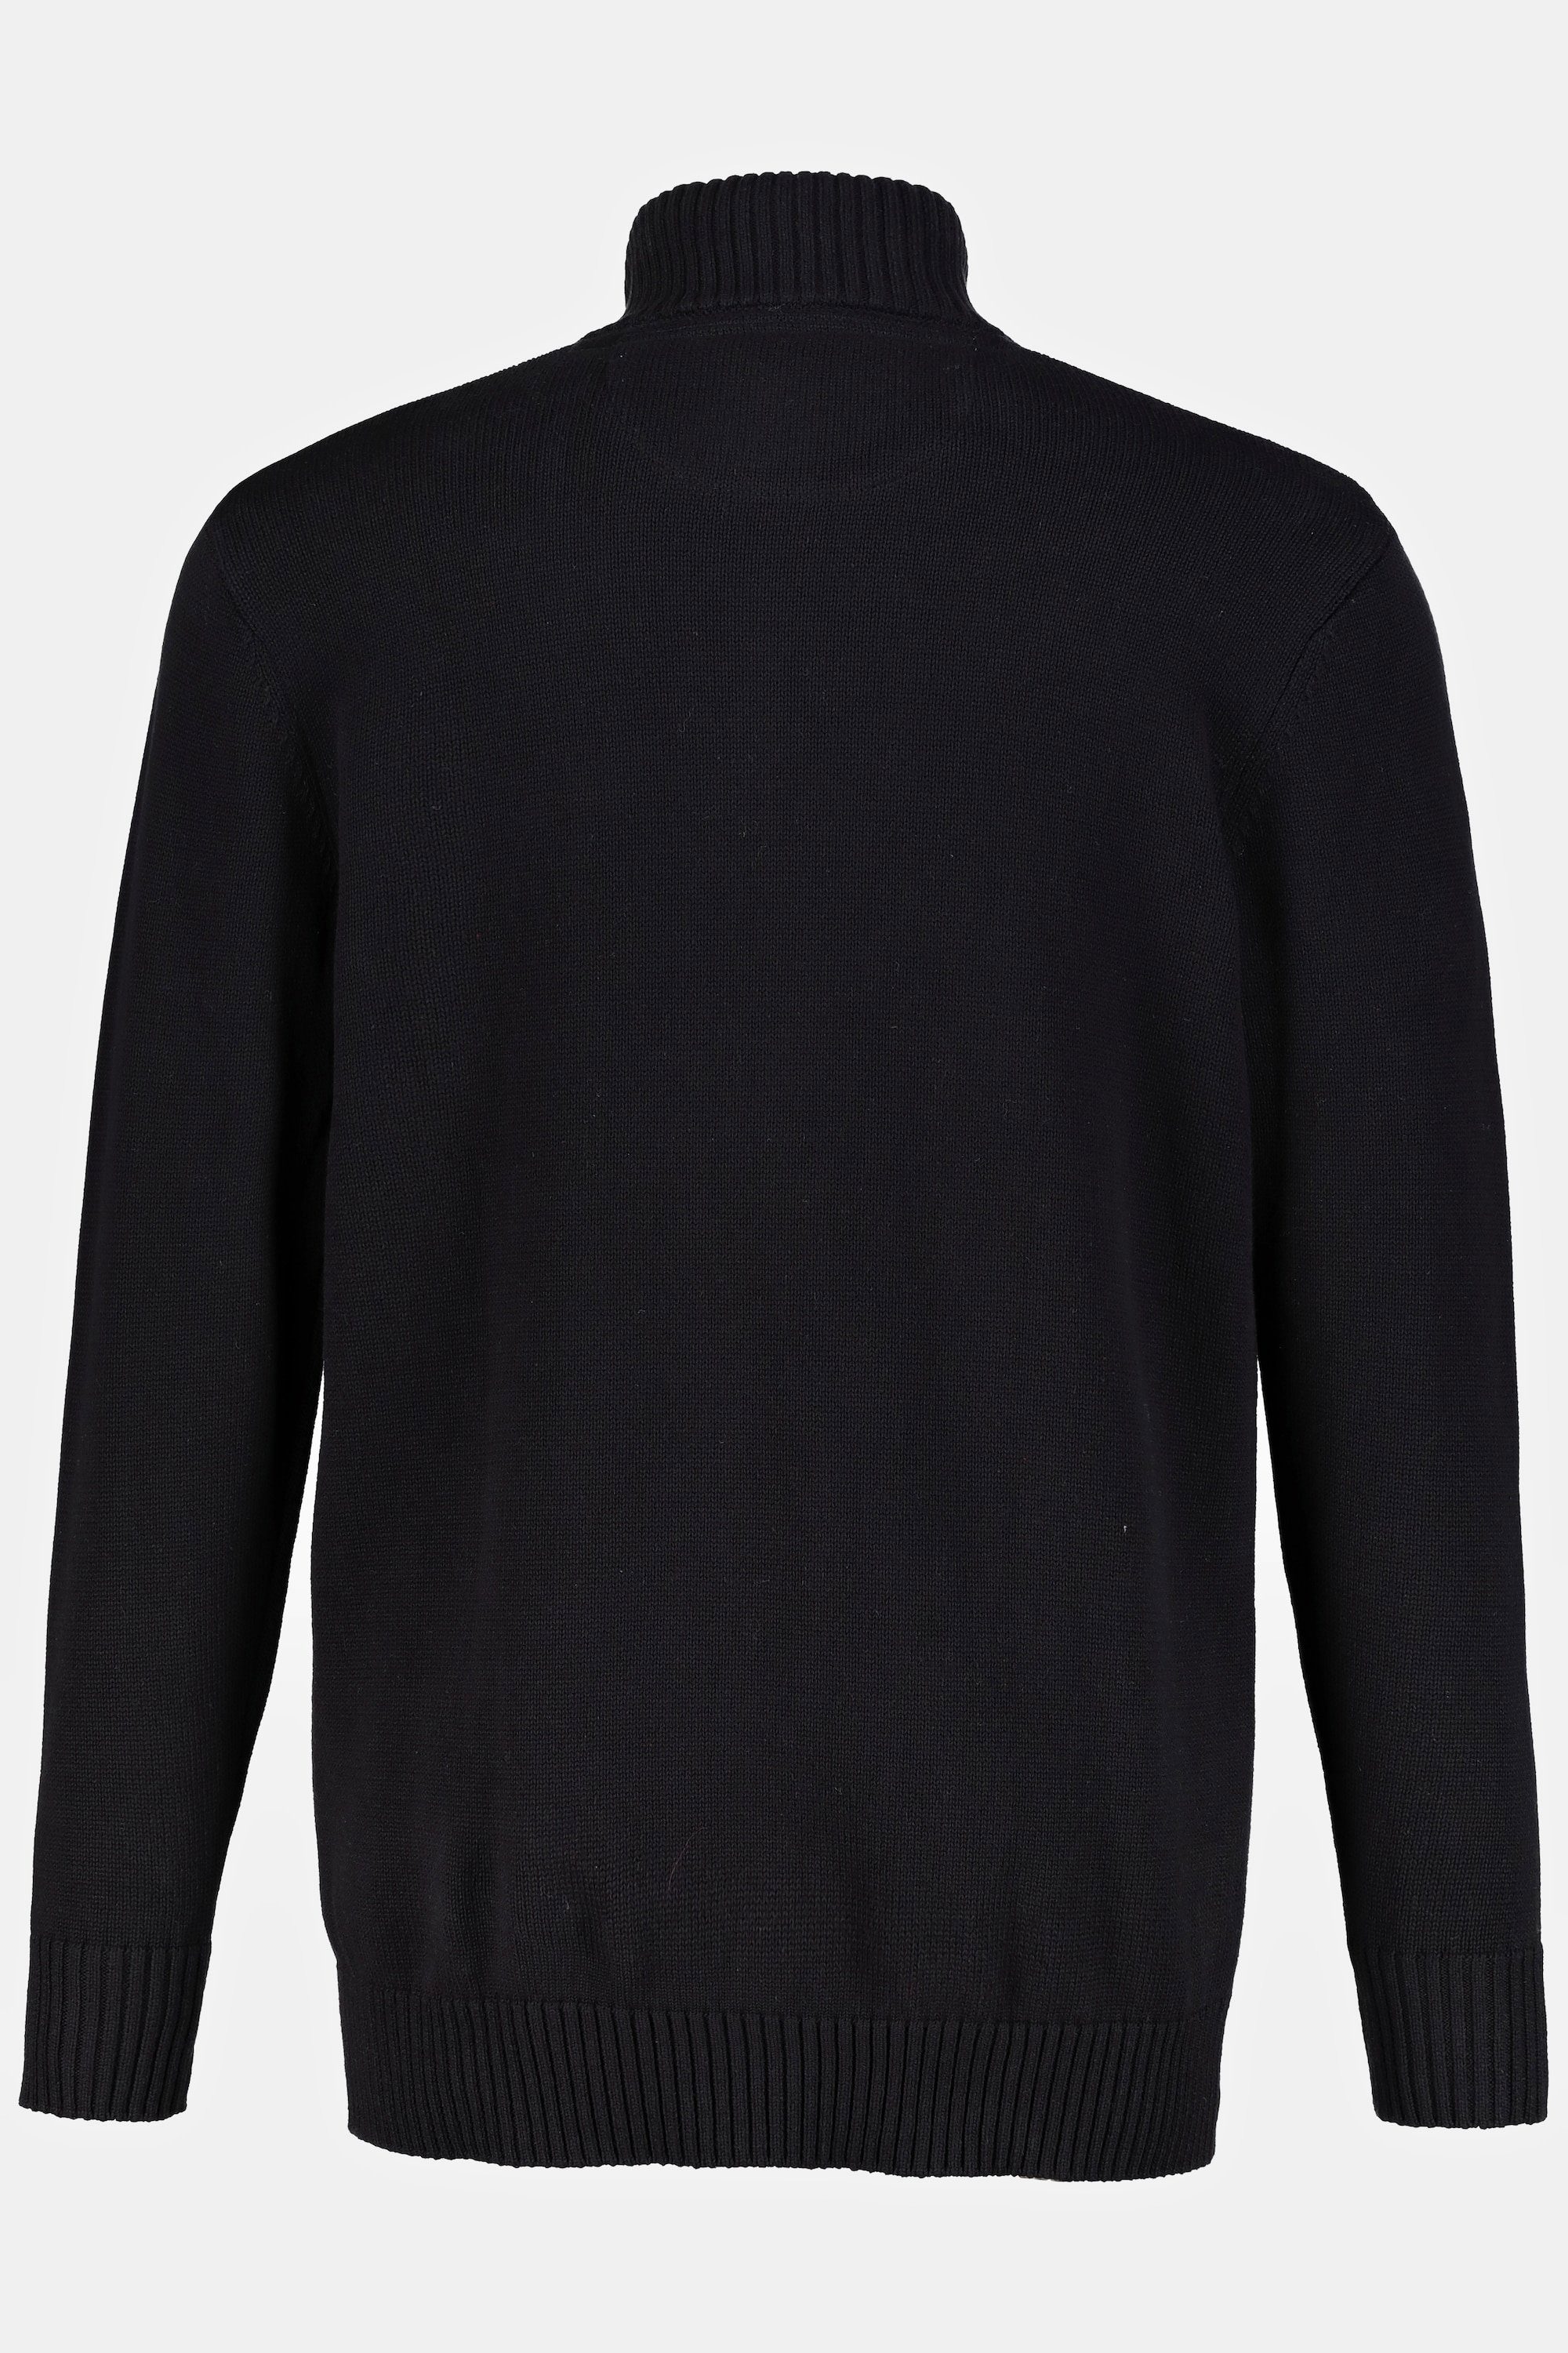 Strickjacke Stehkragen Rippbündchen schwarz JP1880 Poloshirt